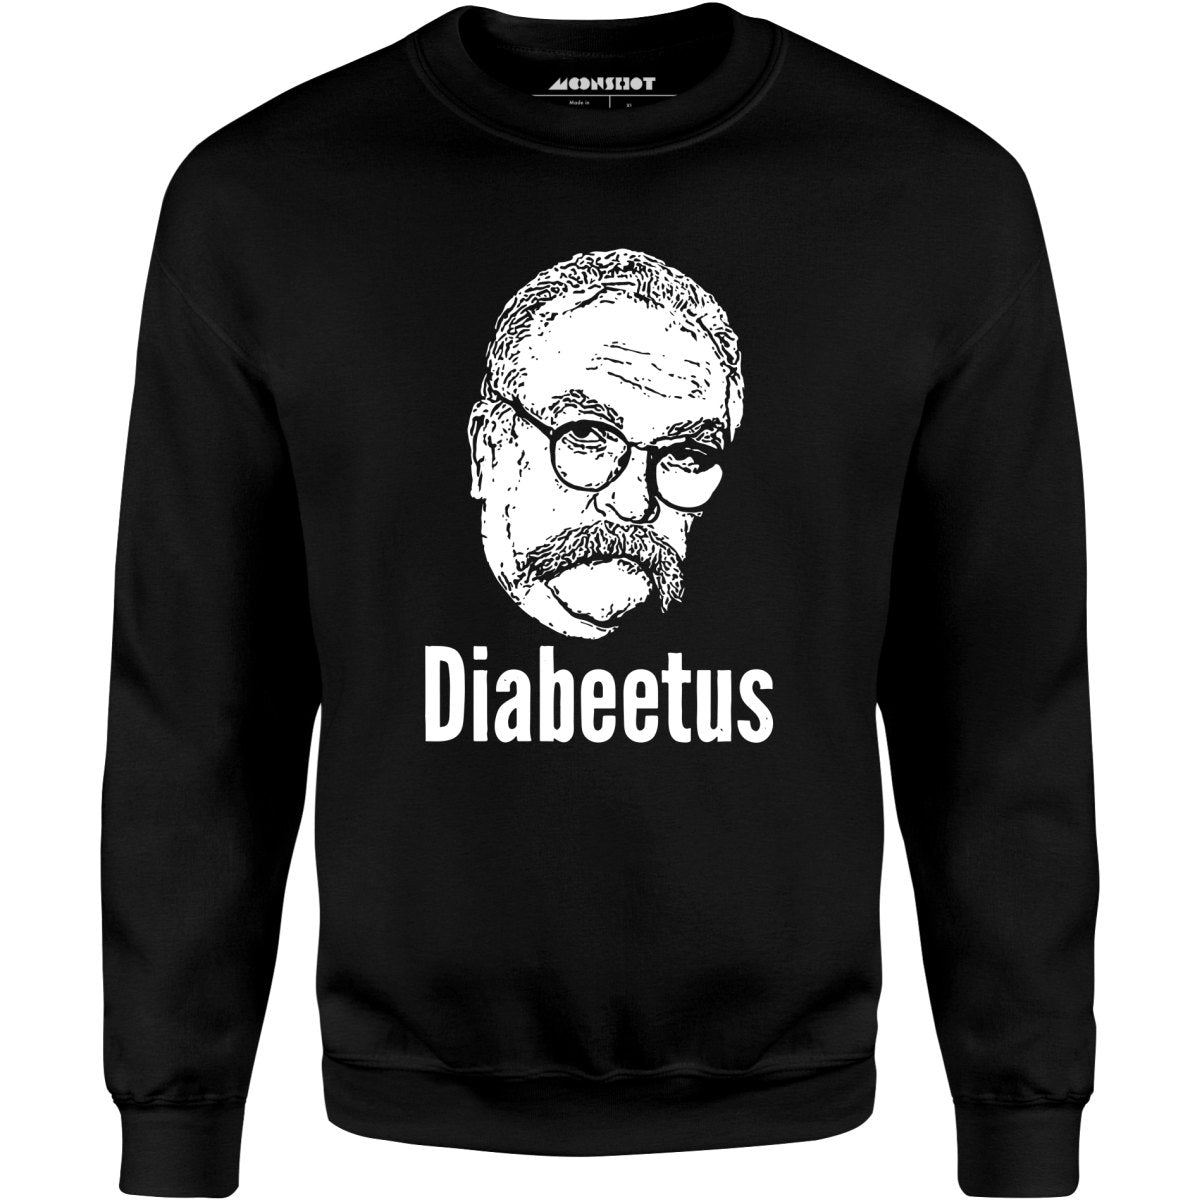 Diabeetus - Unisex Sweatshirt